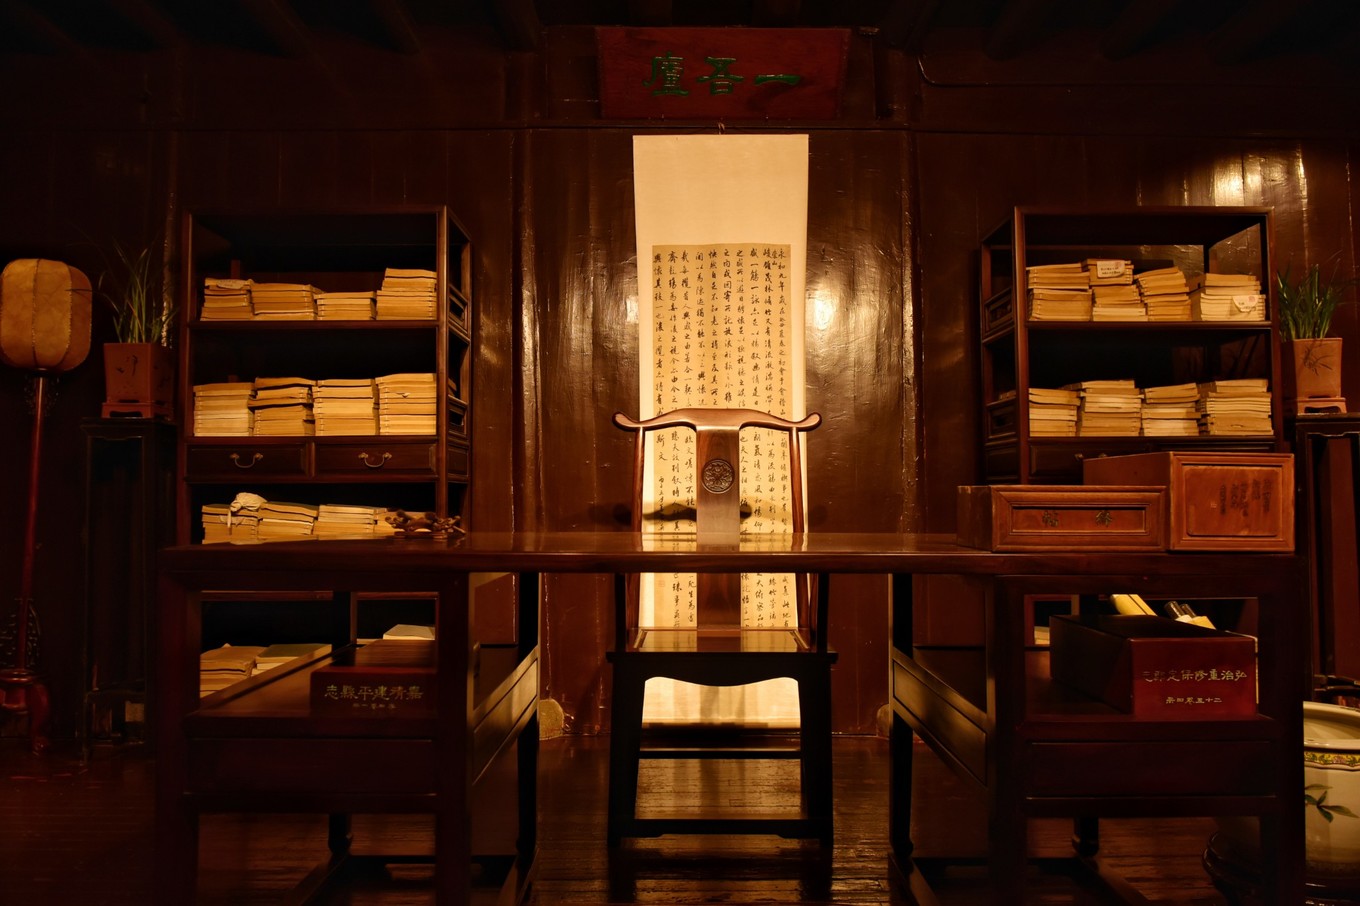 来宁波看中国最古老的藏书楼天一阁在鼓楼寻找当地特色美食